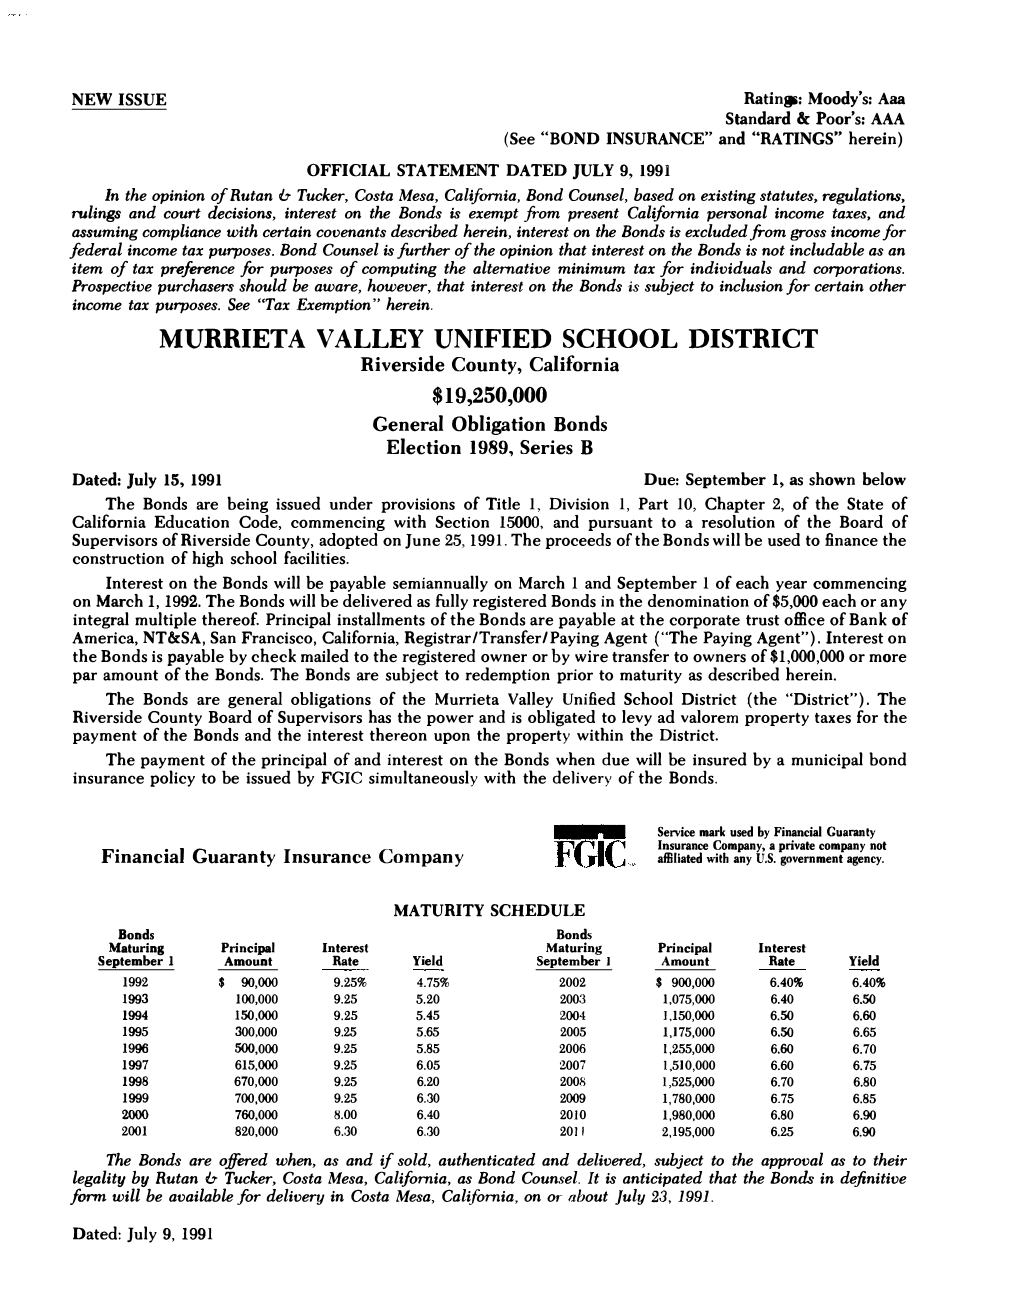 Murrieta Valley Unified School District